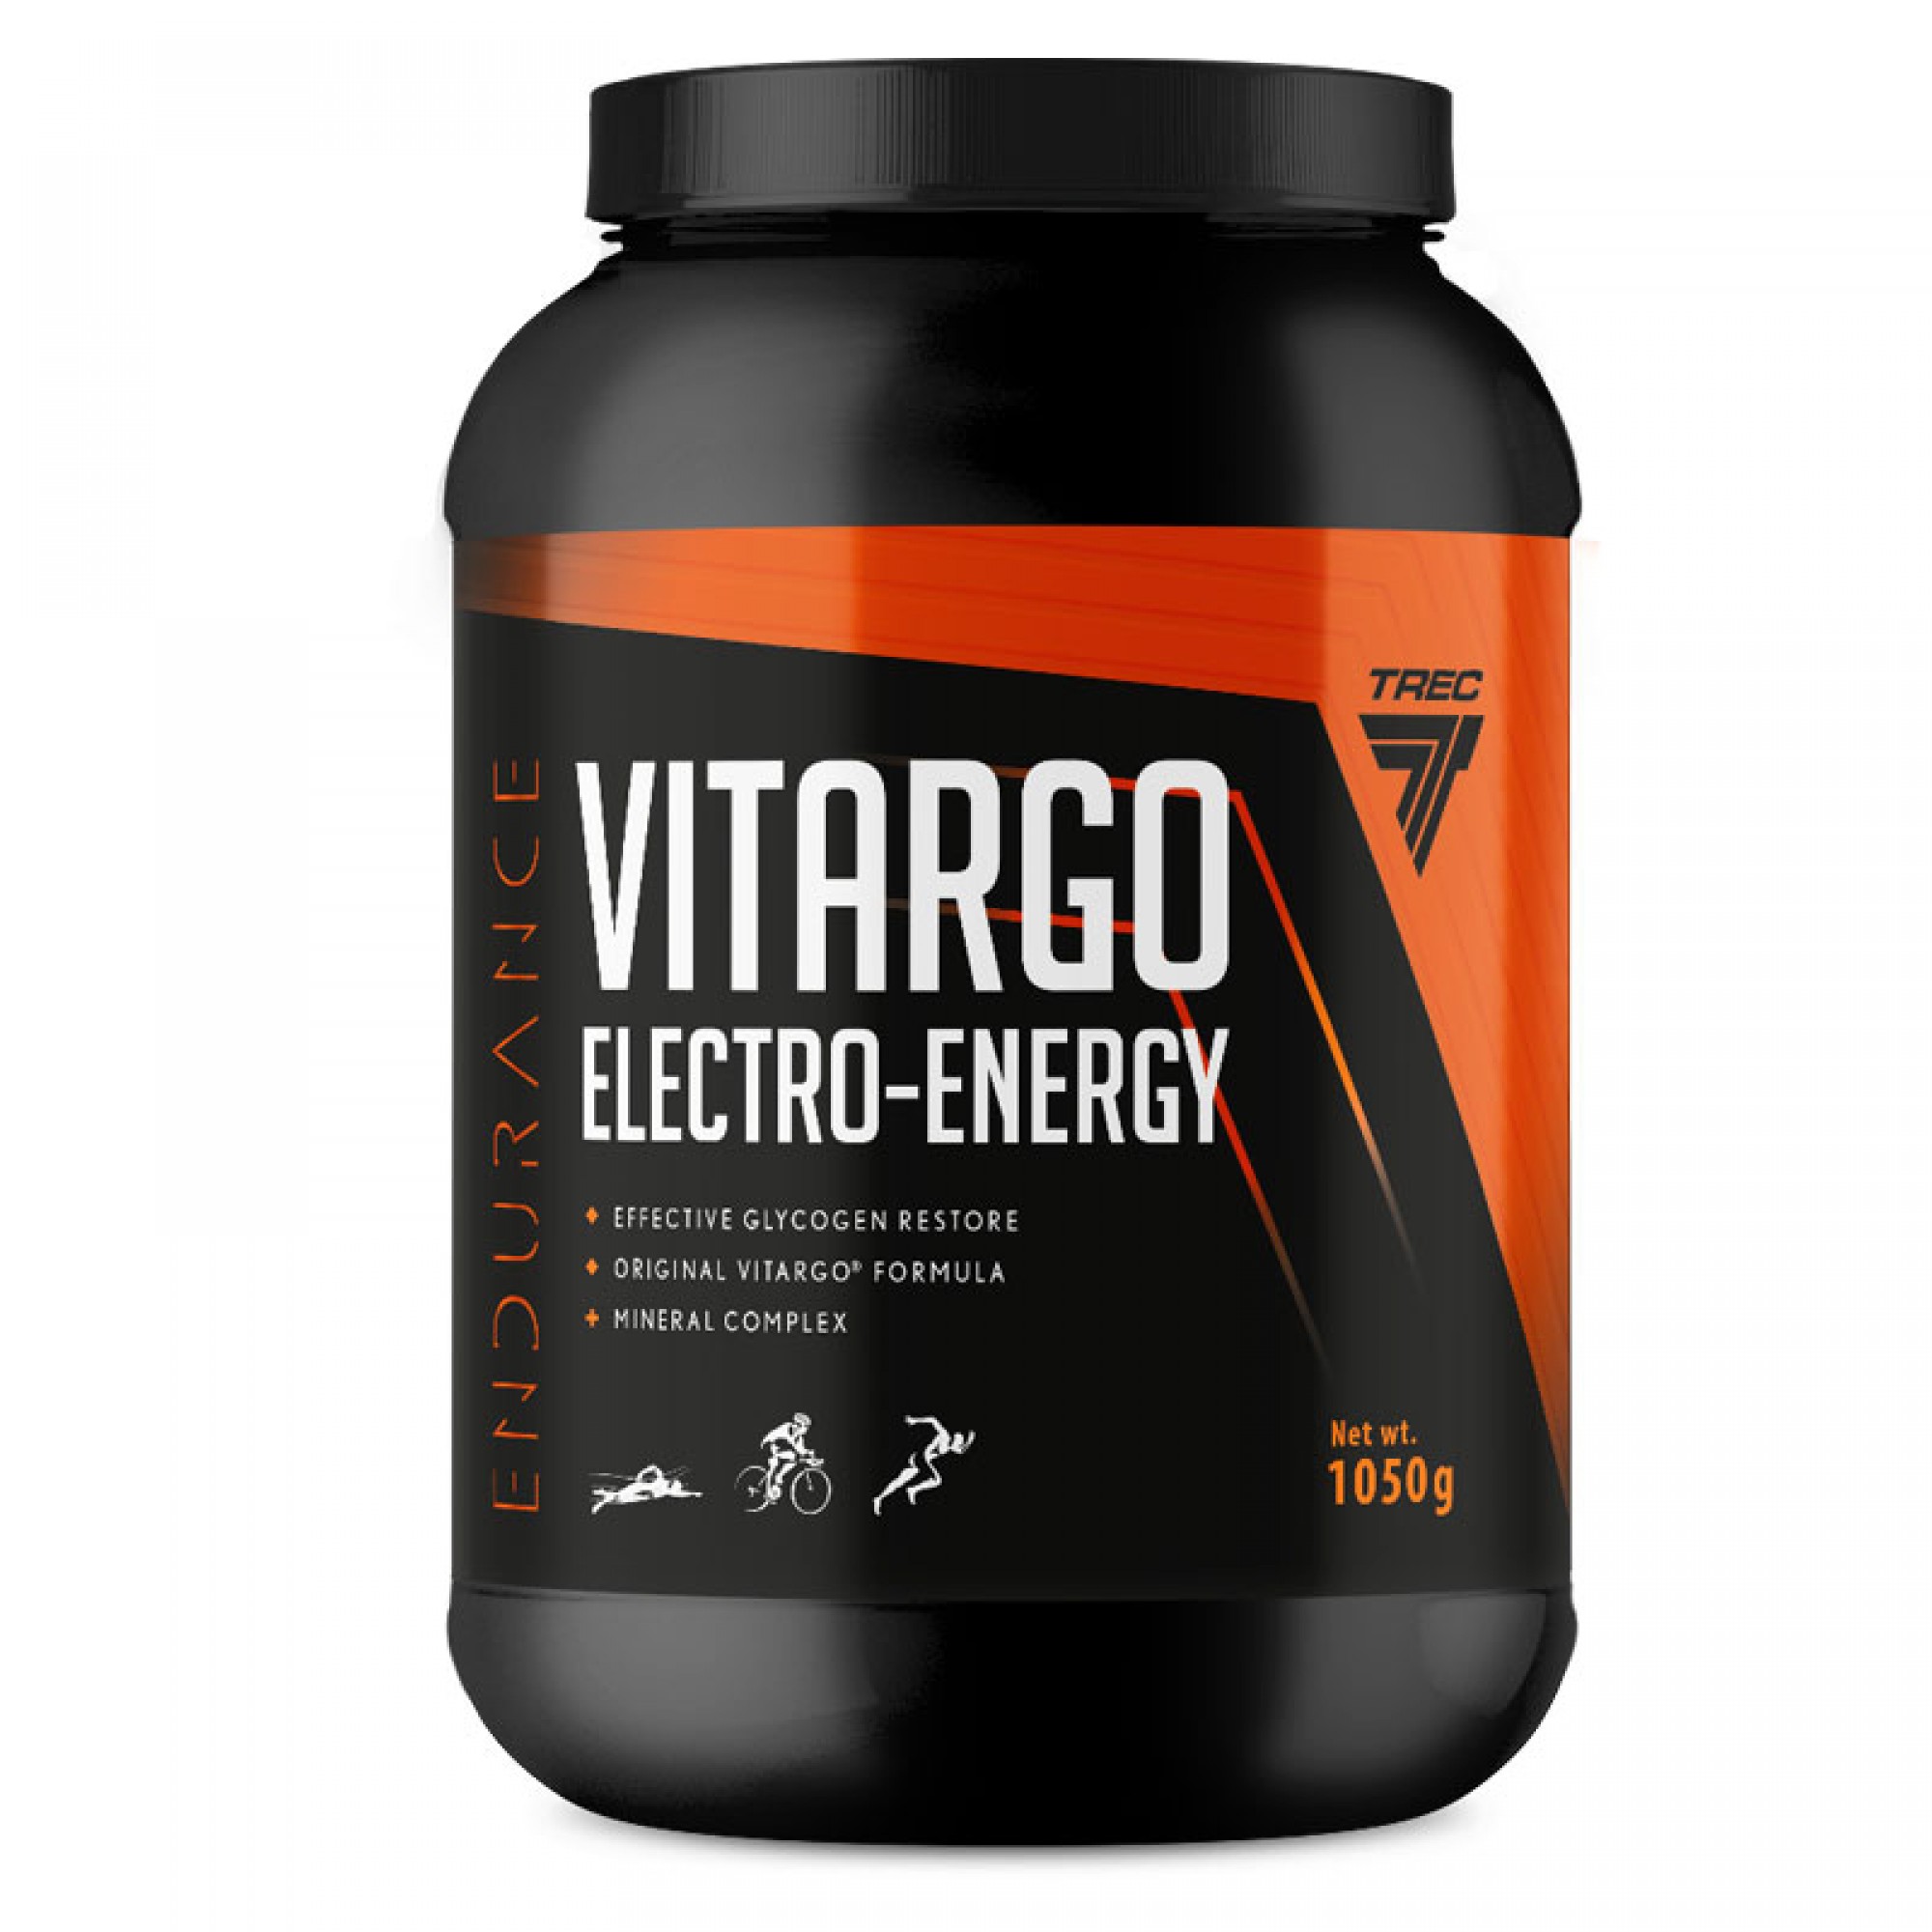 VITARGO ECECTRO-ENERGY 